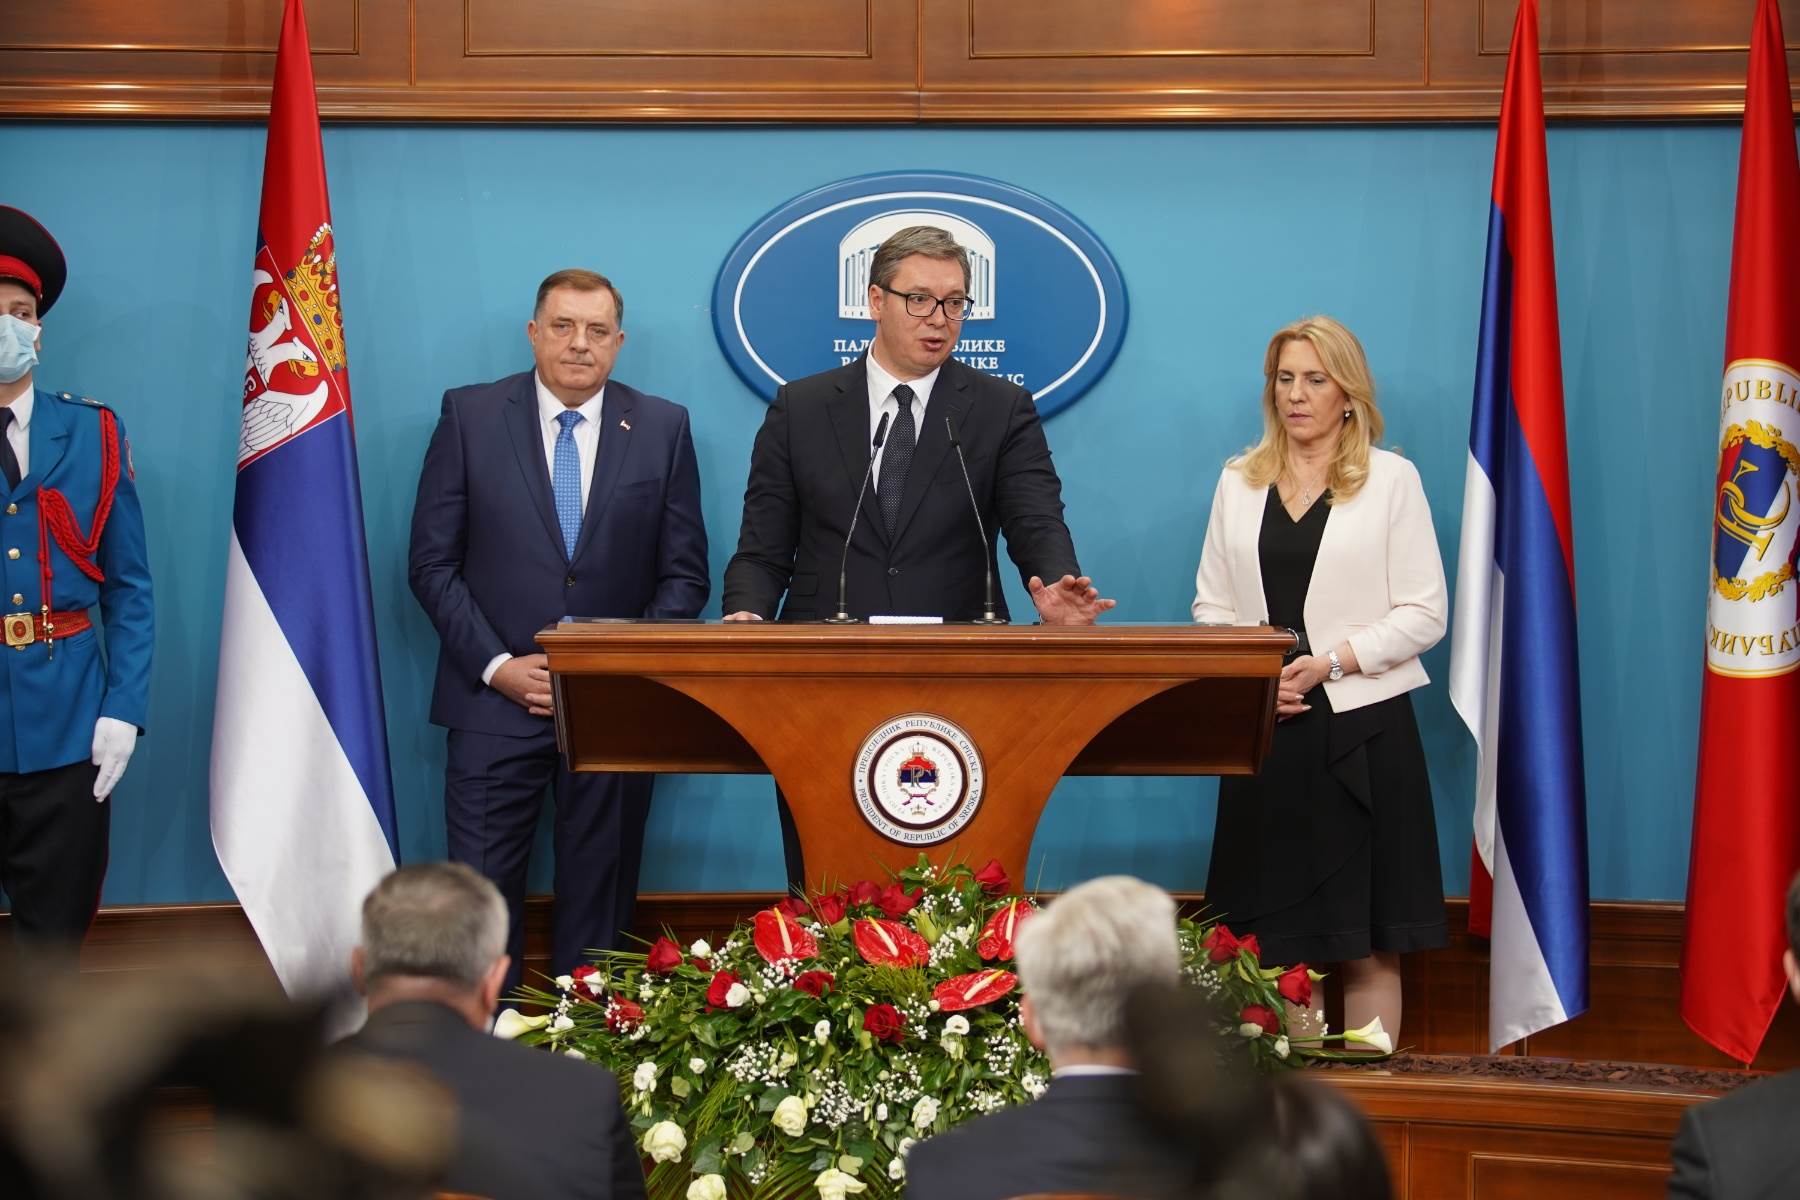  Aleksandar Vučić, Željka Cvijanović, Srbija, Srpska, sastanak 